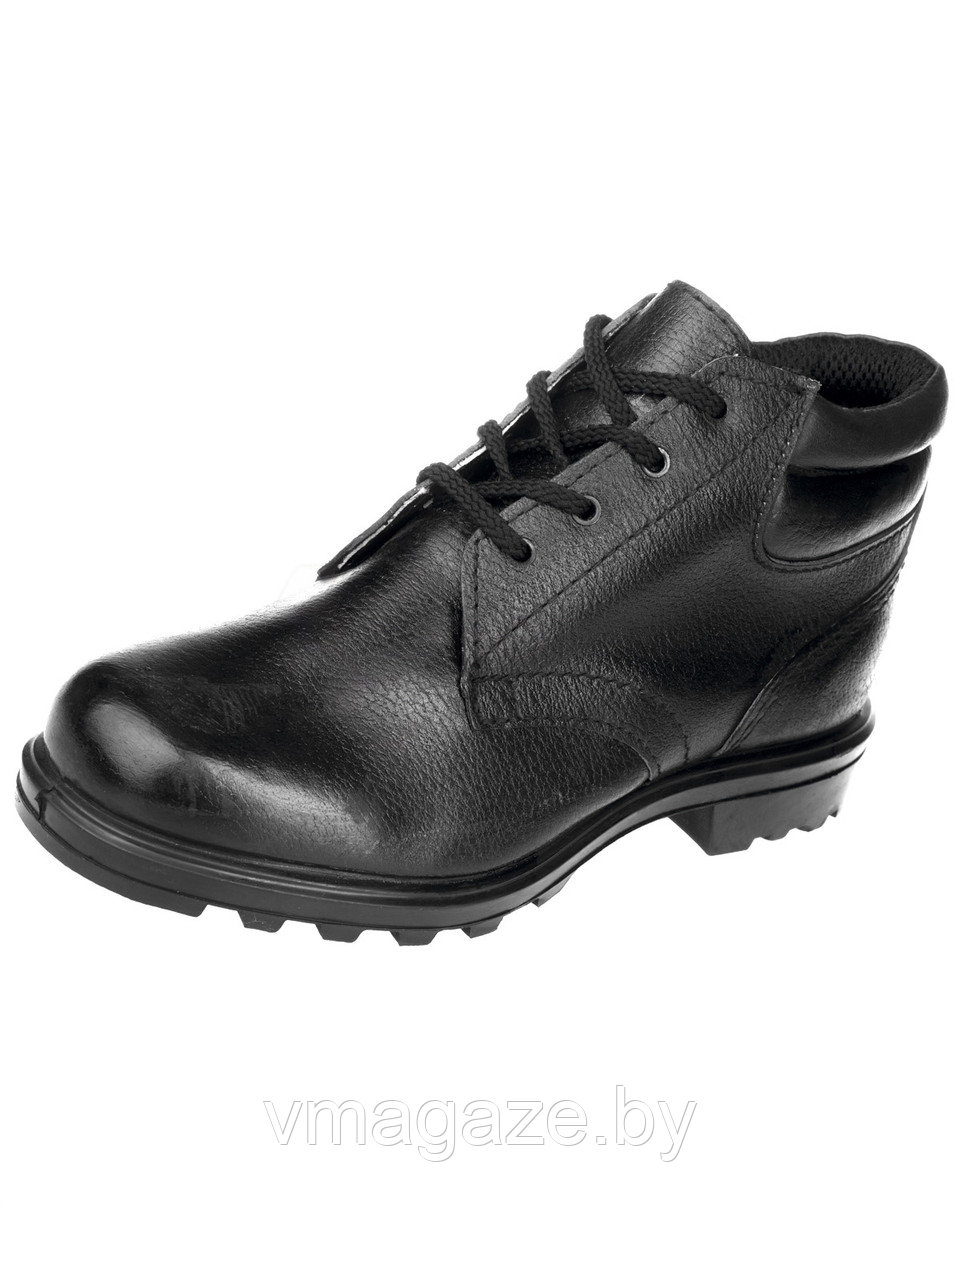 Ботинки М911 м/п натуральная кожа(цвет черный)